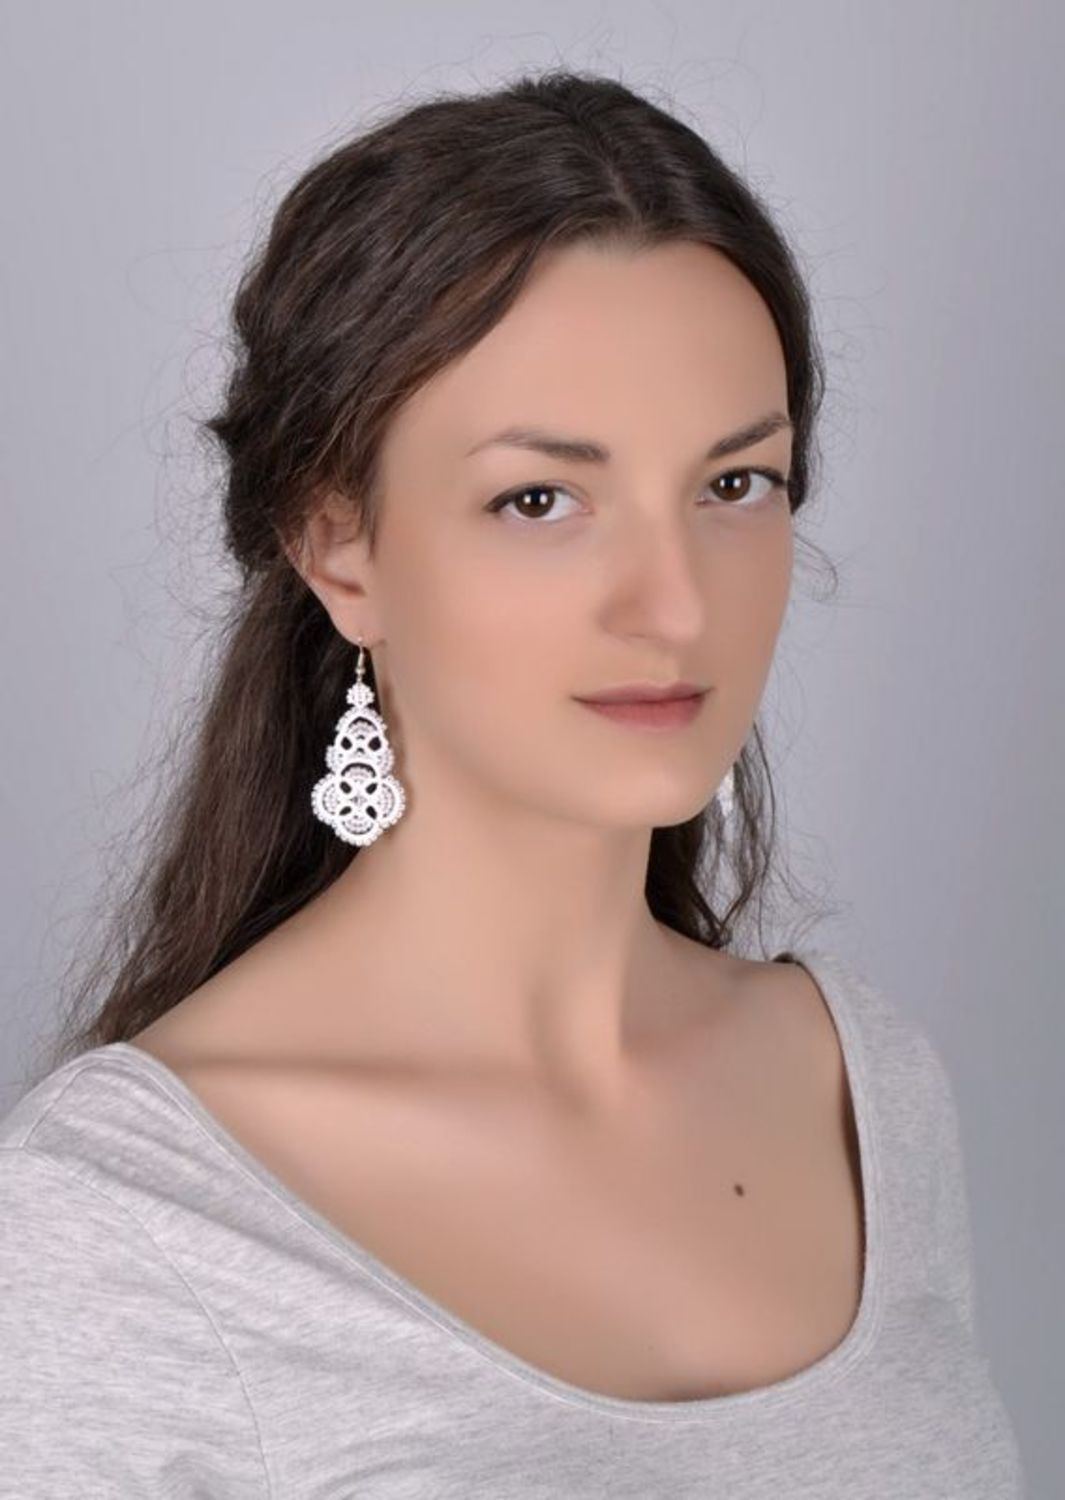 Lace earrings photo 5